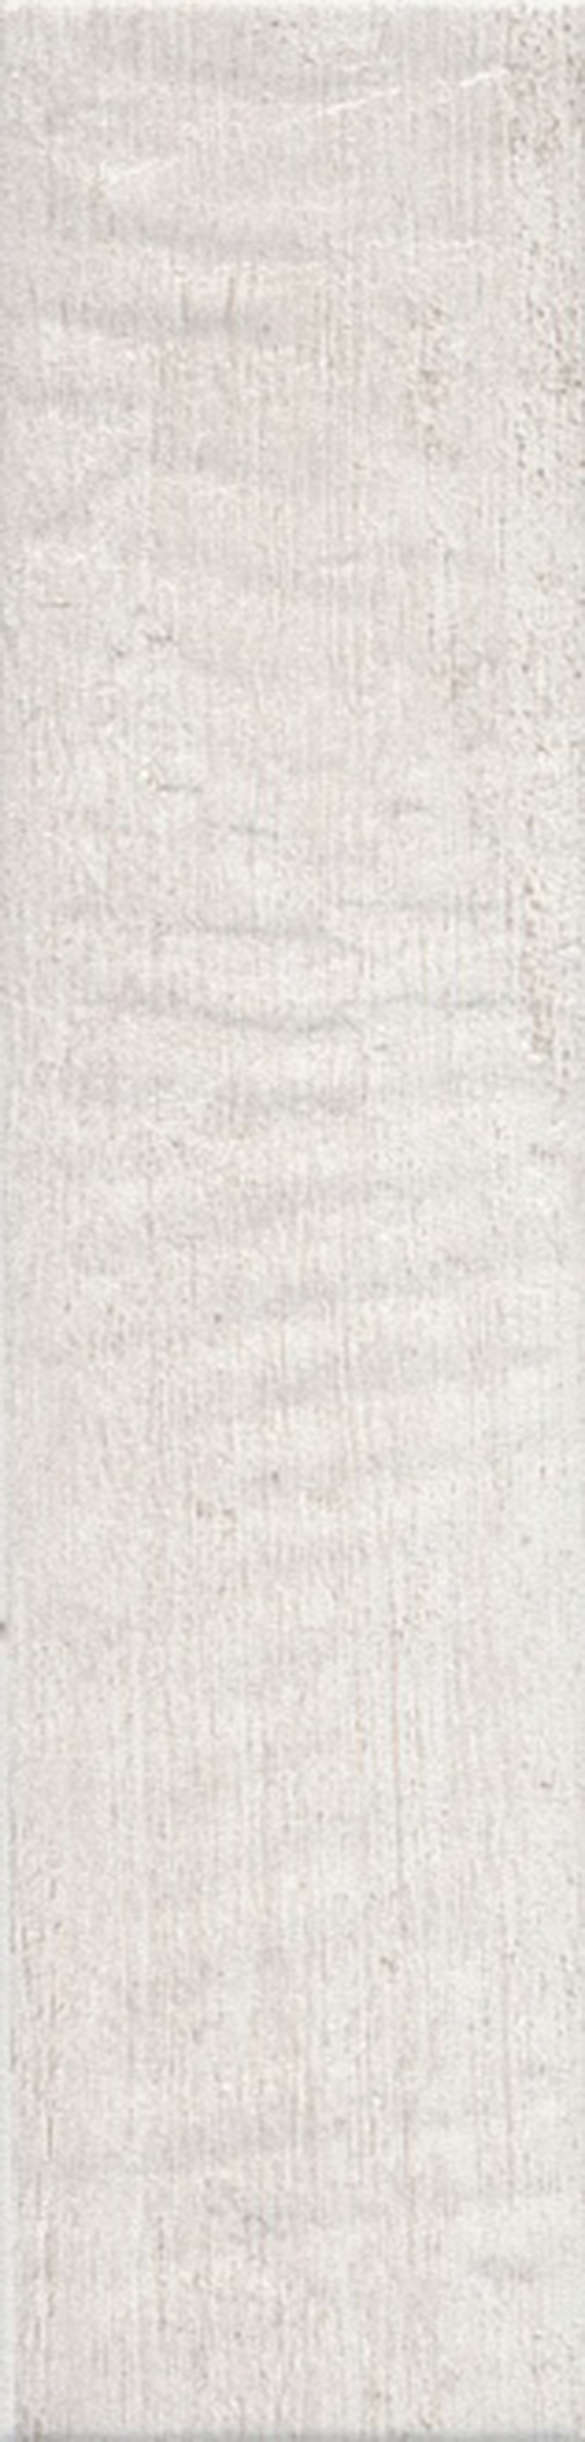 Плитка для ванной Kerama Marazzi  Керамический гранит Кантри Шик белый  9,9*40,2 фото